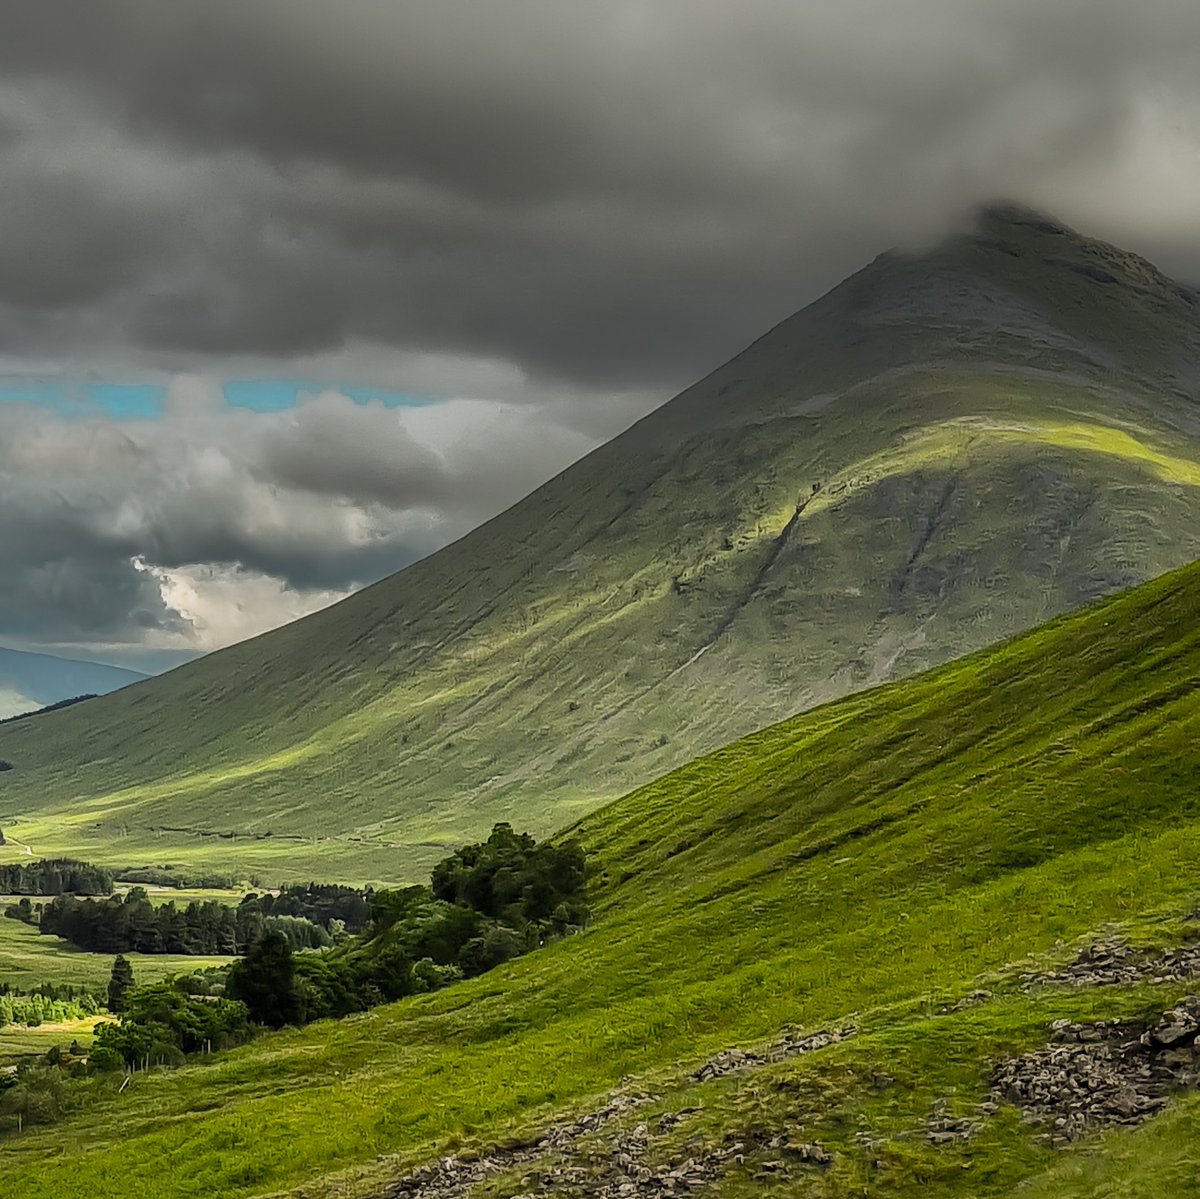 Beinn Dorain from the West Highland Way. #WestHighlandWay @StormHour